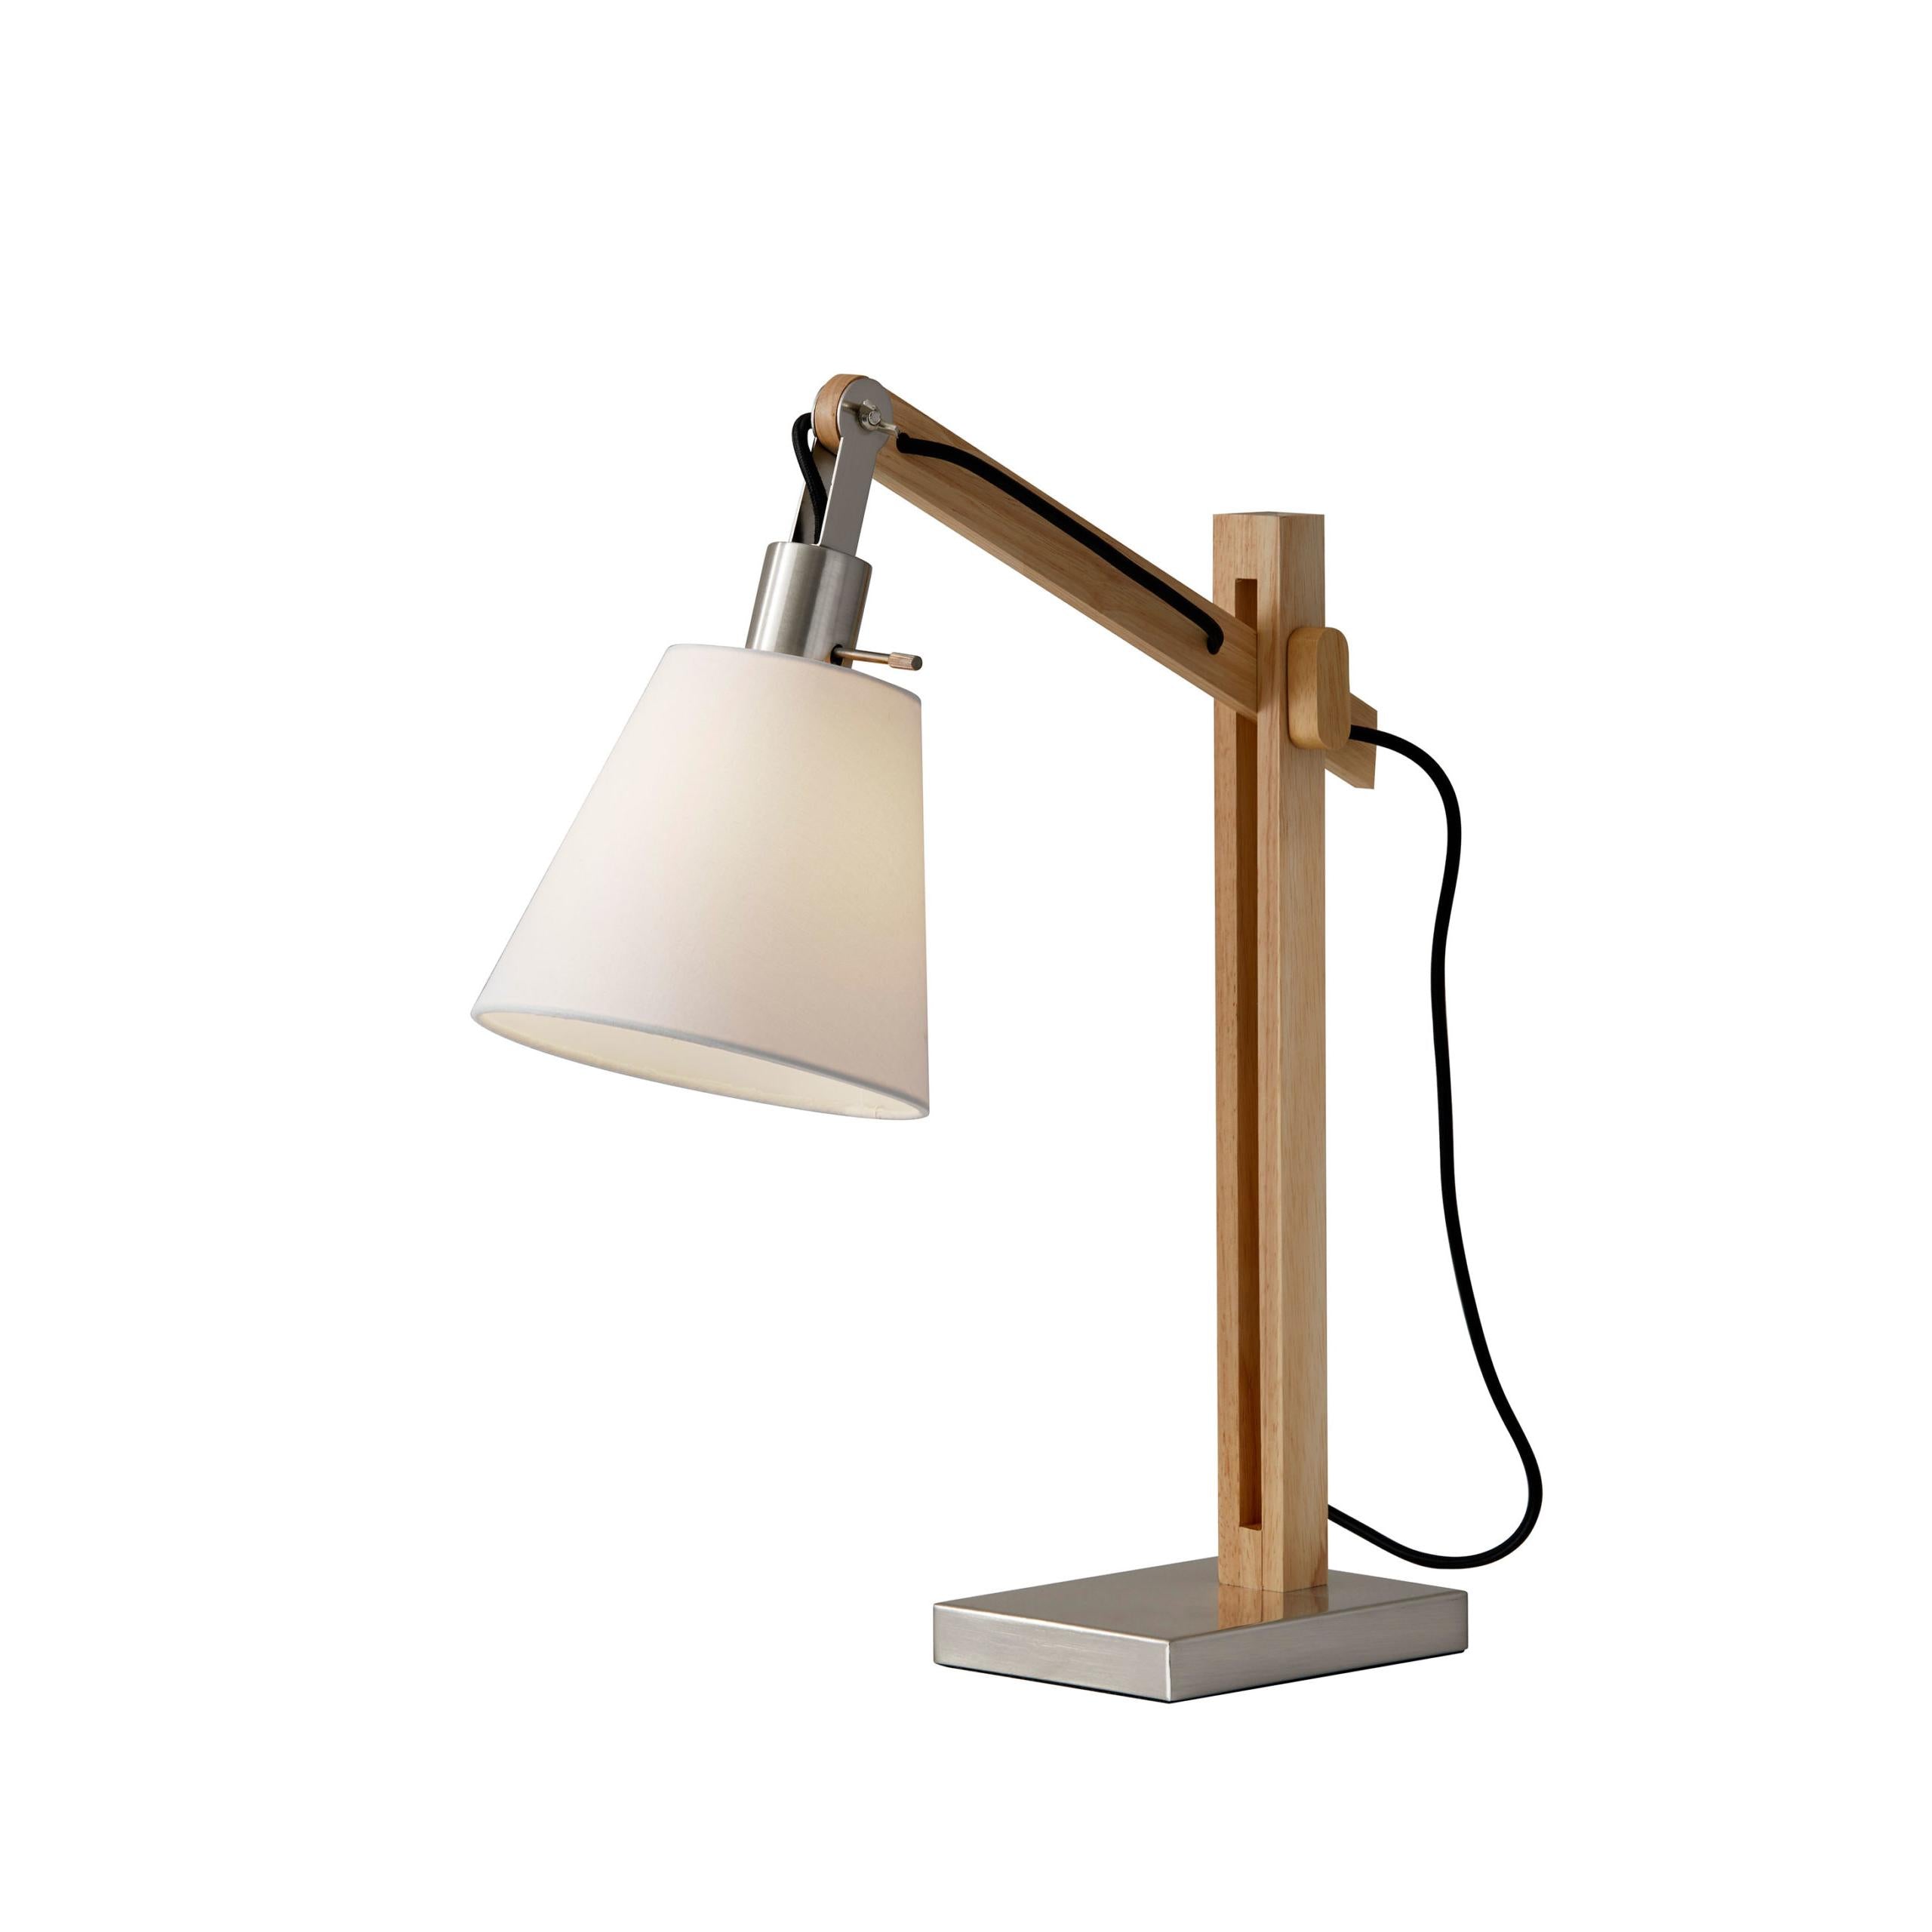 WALDEN Lampe sur table Bois - 4088-12 | ADESSO